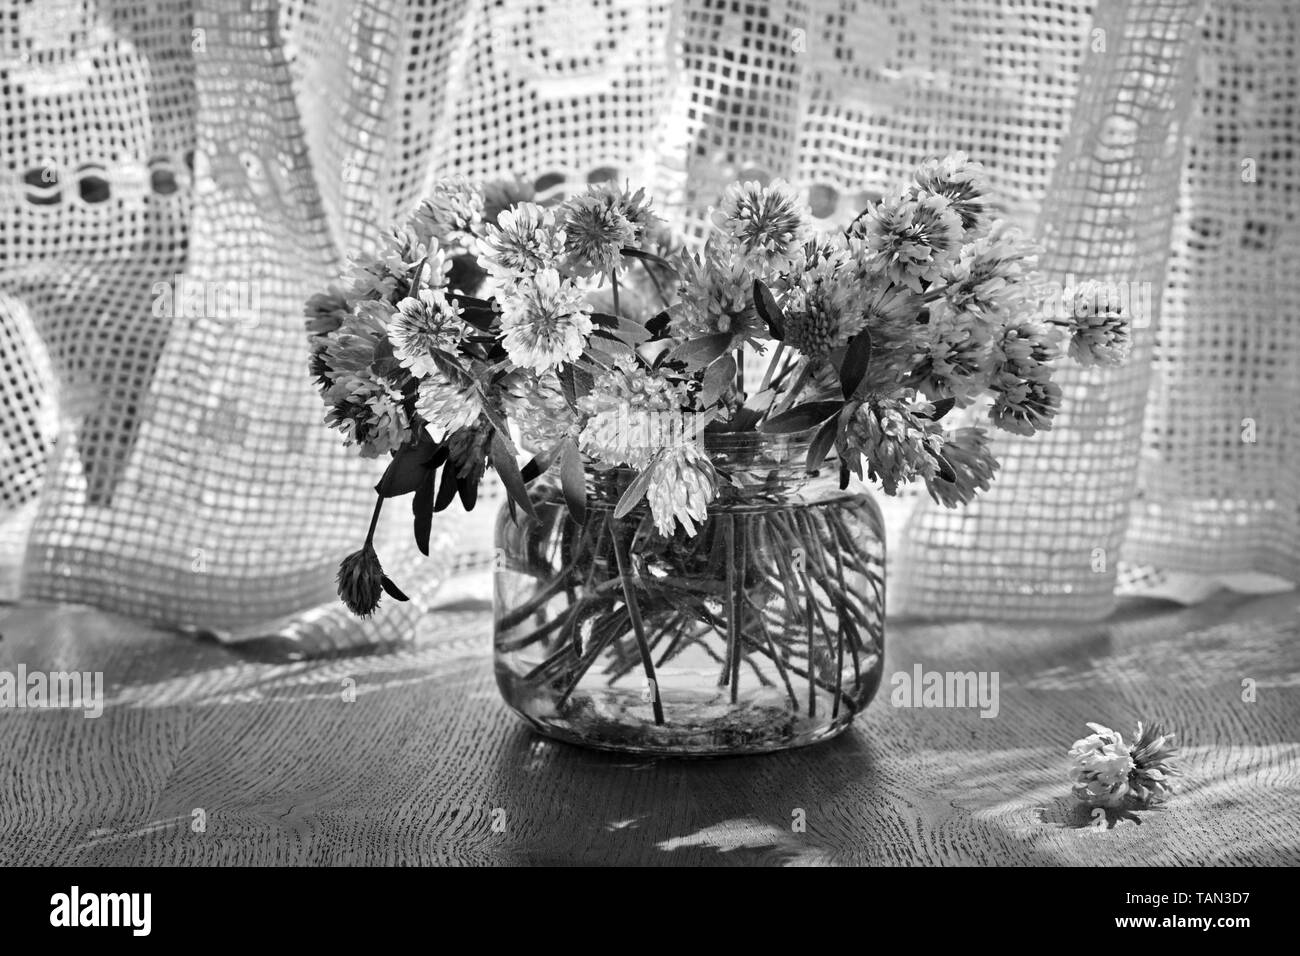 Les trèfles frais dans le bocal en verre dans un contexte de la fenêtre avec le rideau de coton vintage, noir et blanc Banque D'Images